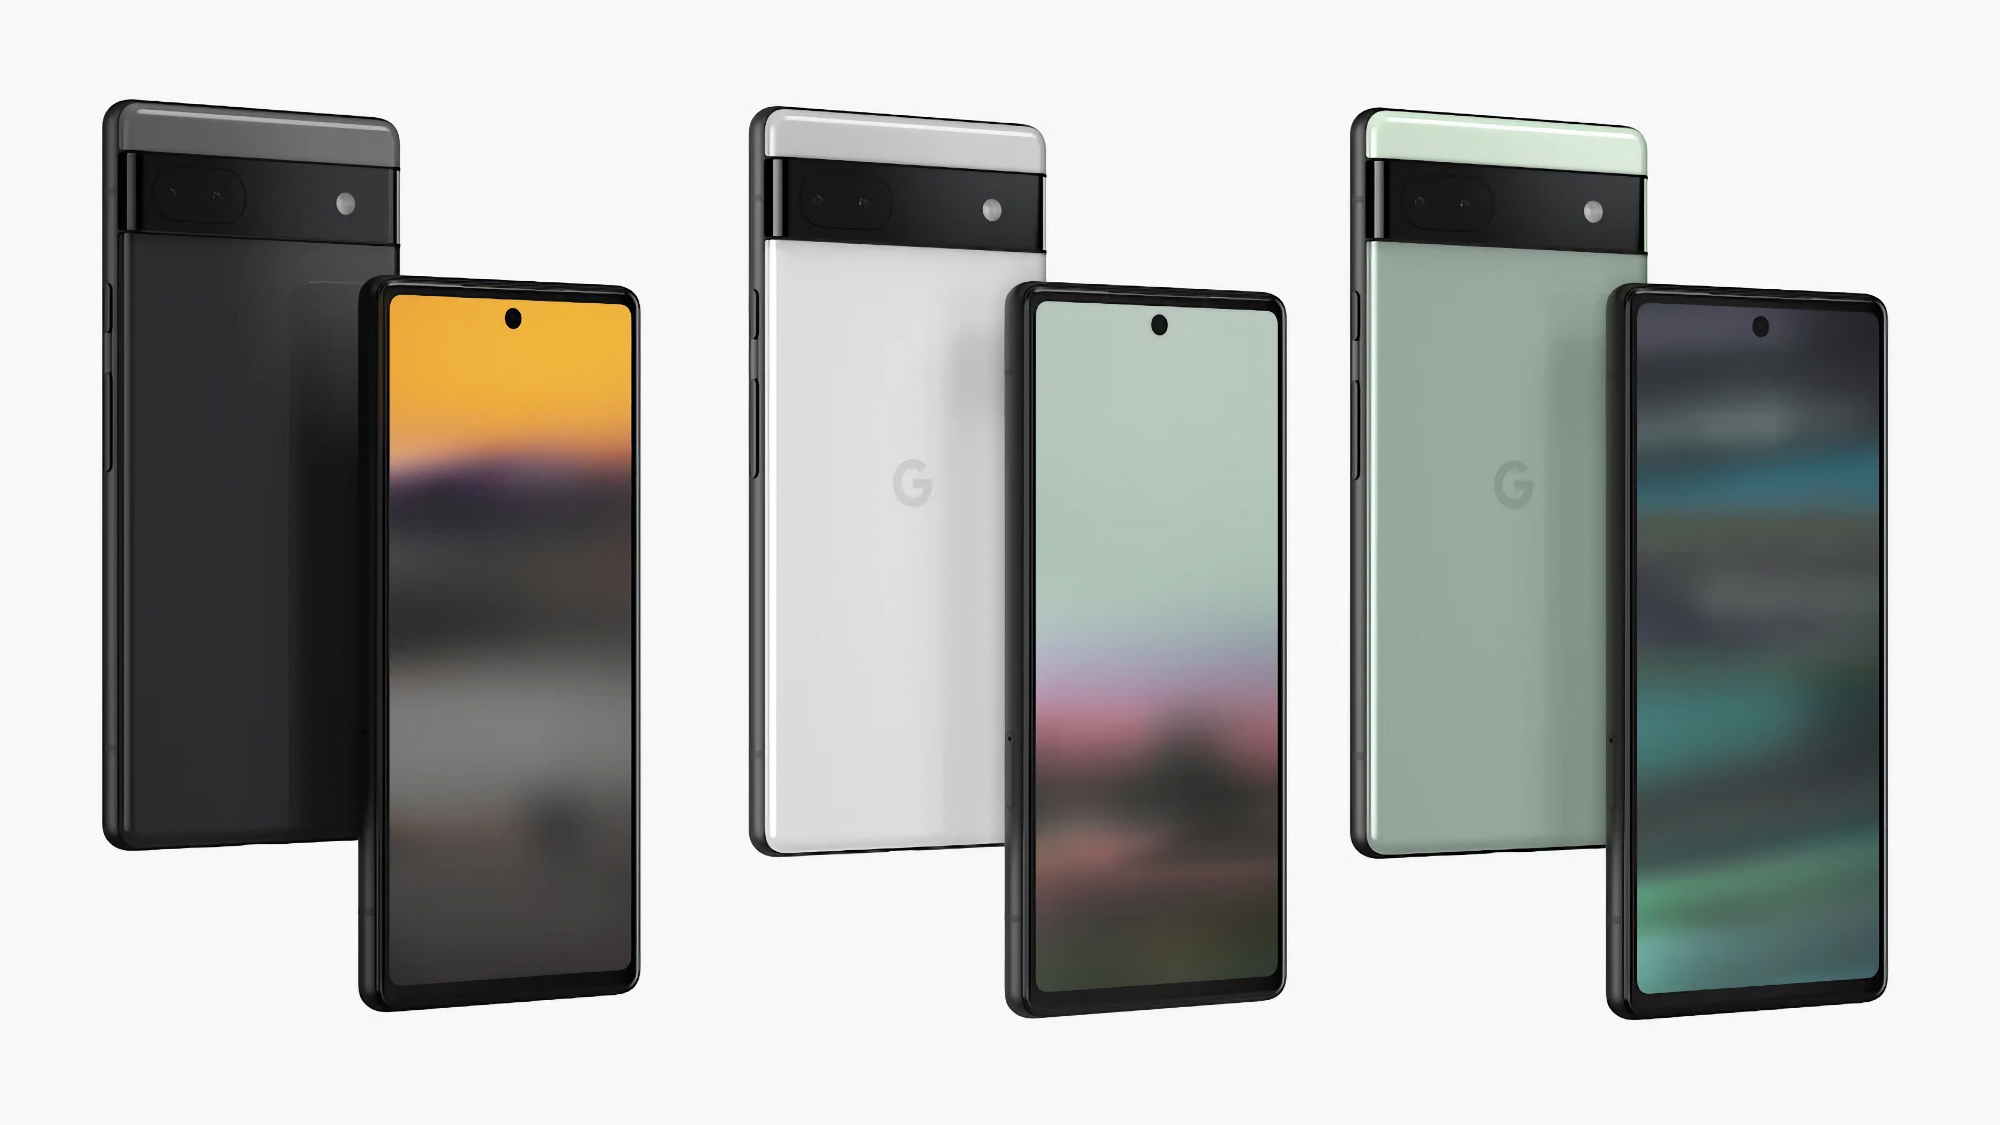 Das Google Pixel 6a ist erneut im Preis gesunken: Das Smartphone kann auf Amazon für 300 Dollar (150 Dollar Rabatt) erworben werden.